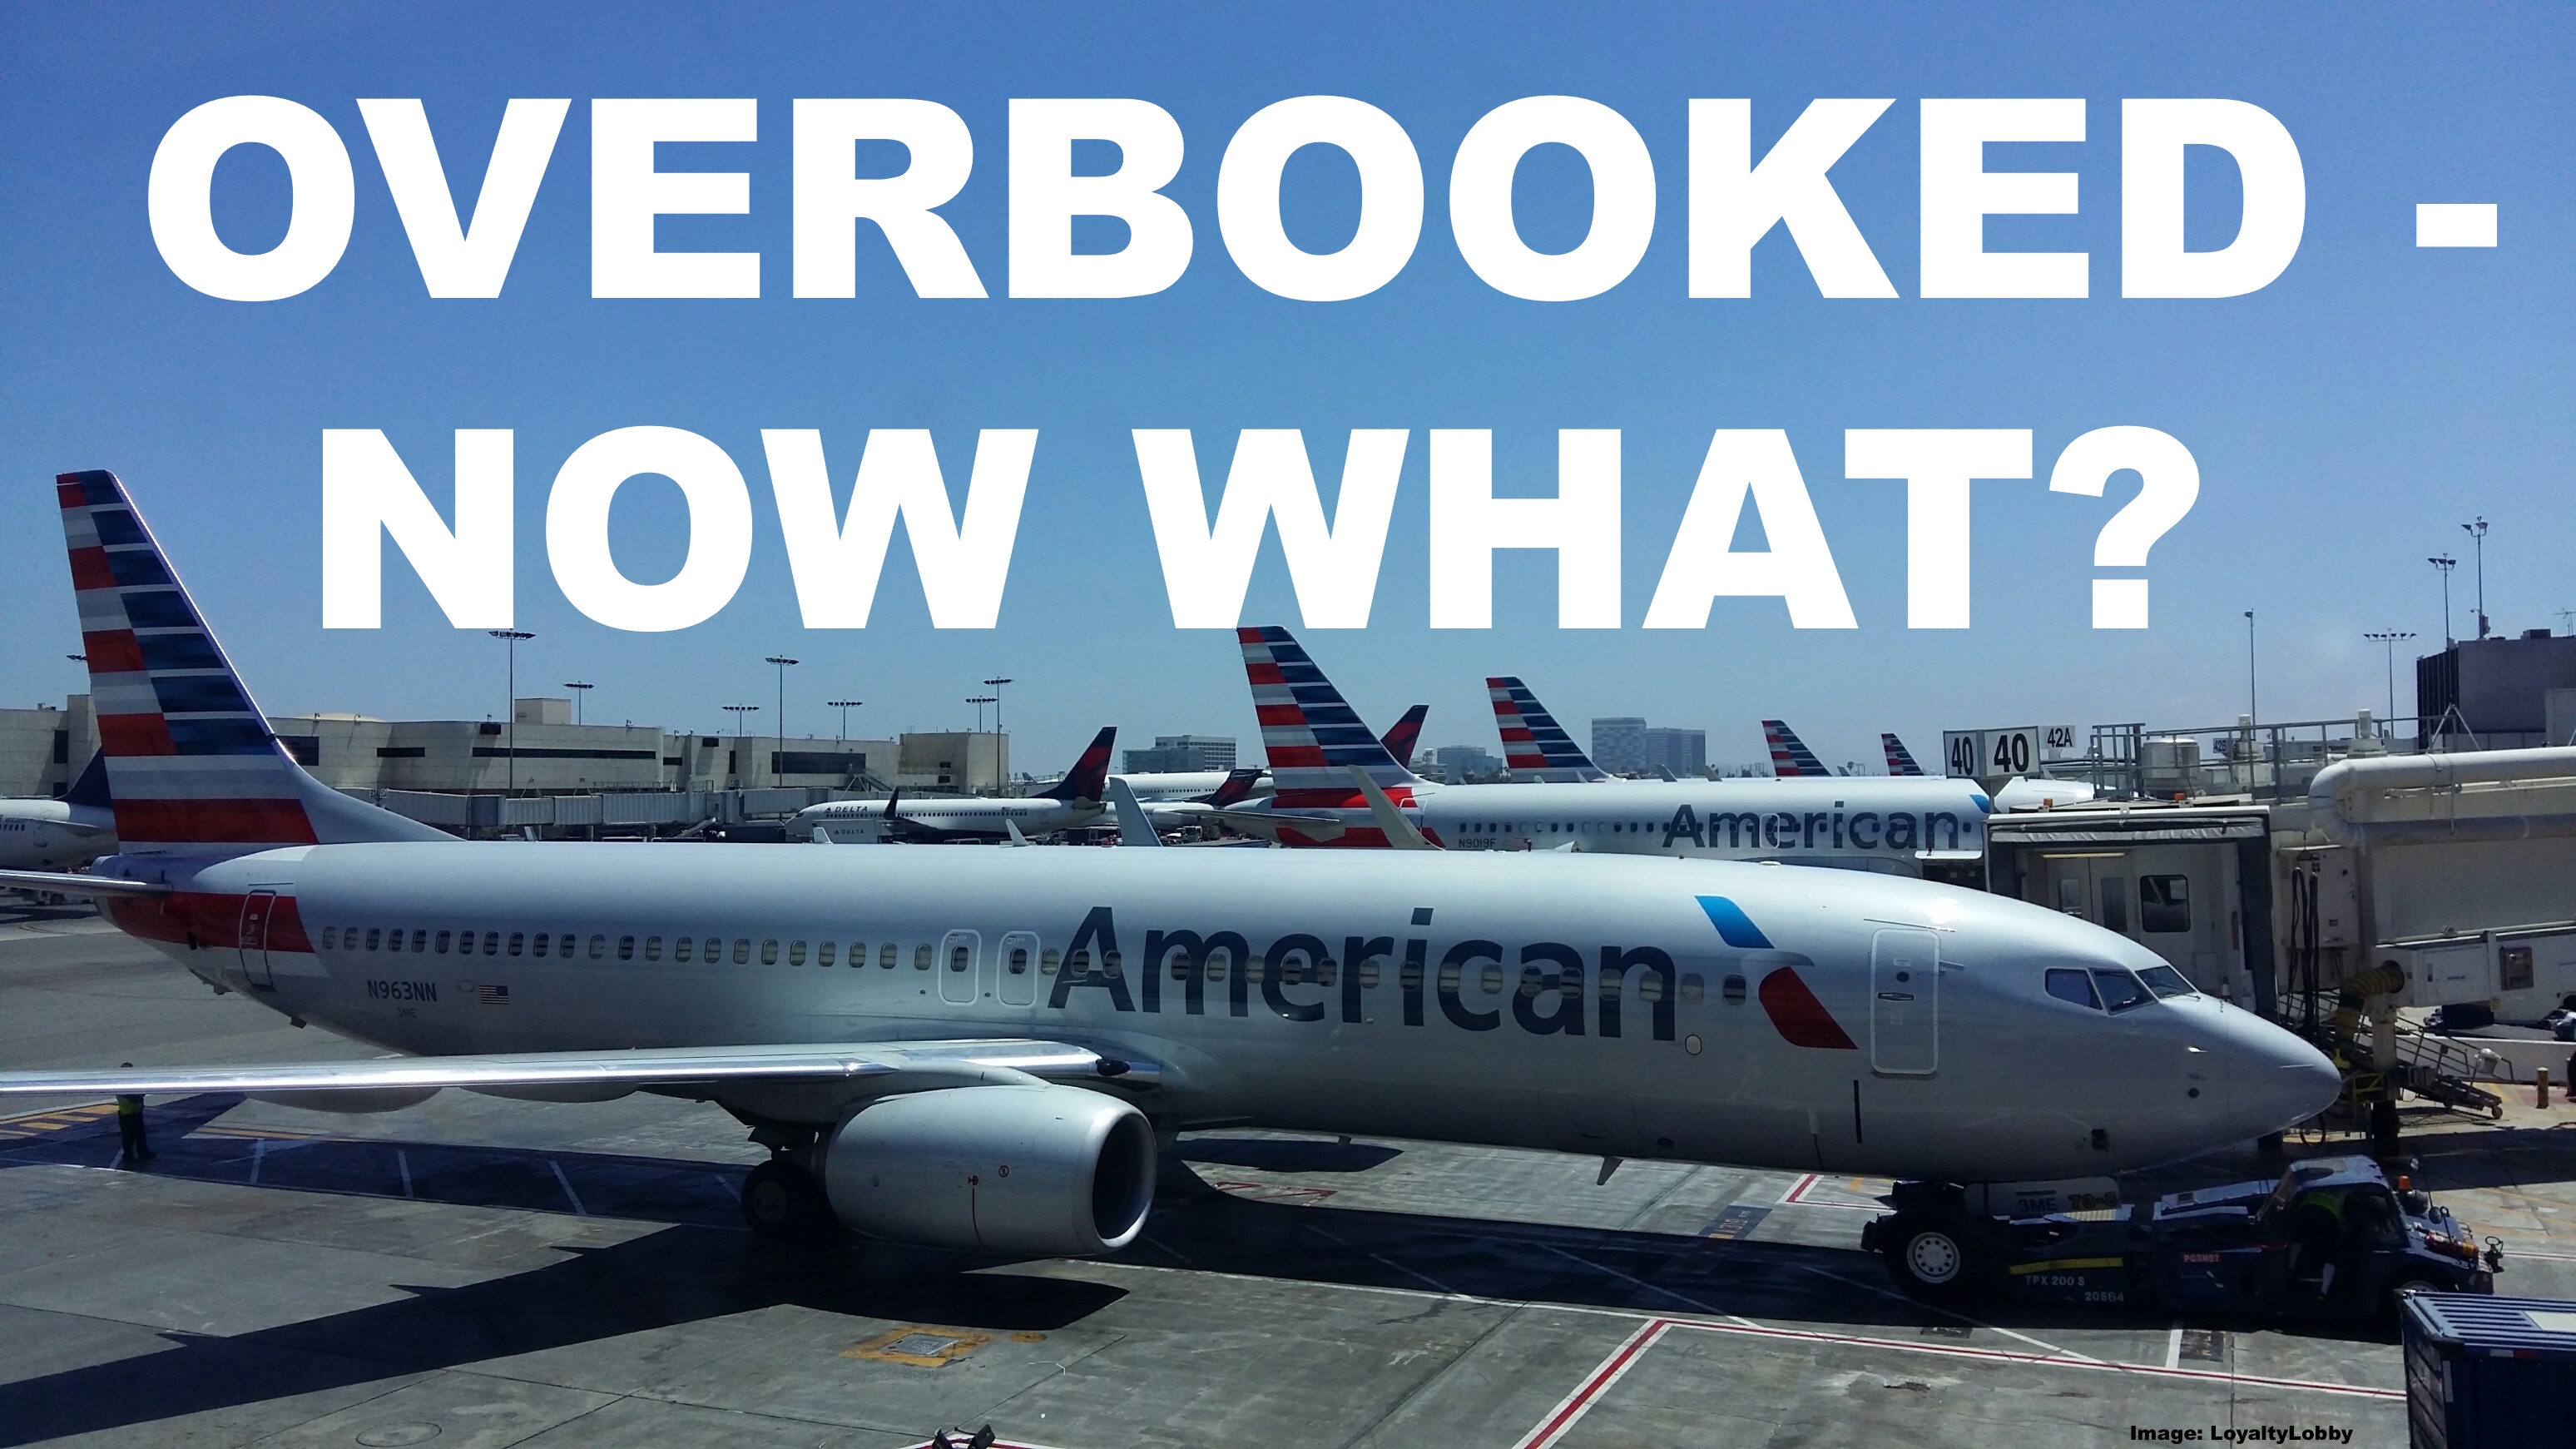 overbooking - um problema comum com companhia aérea